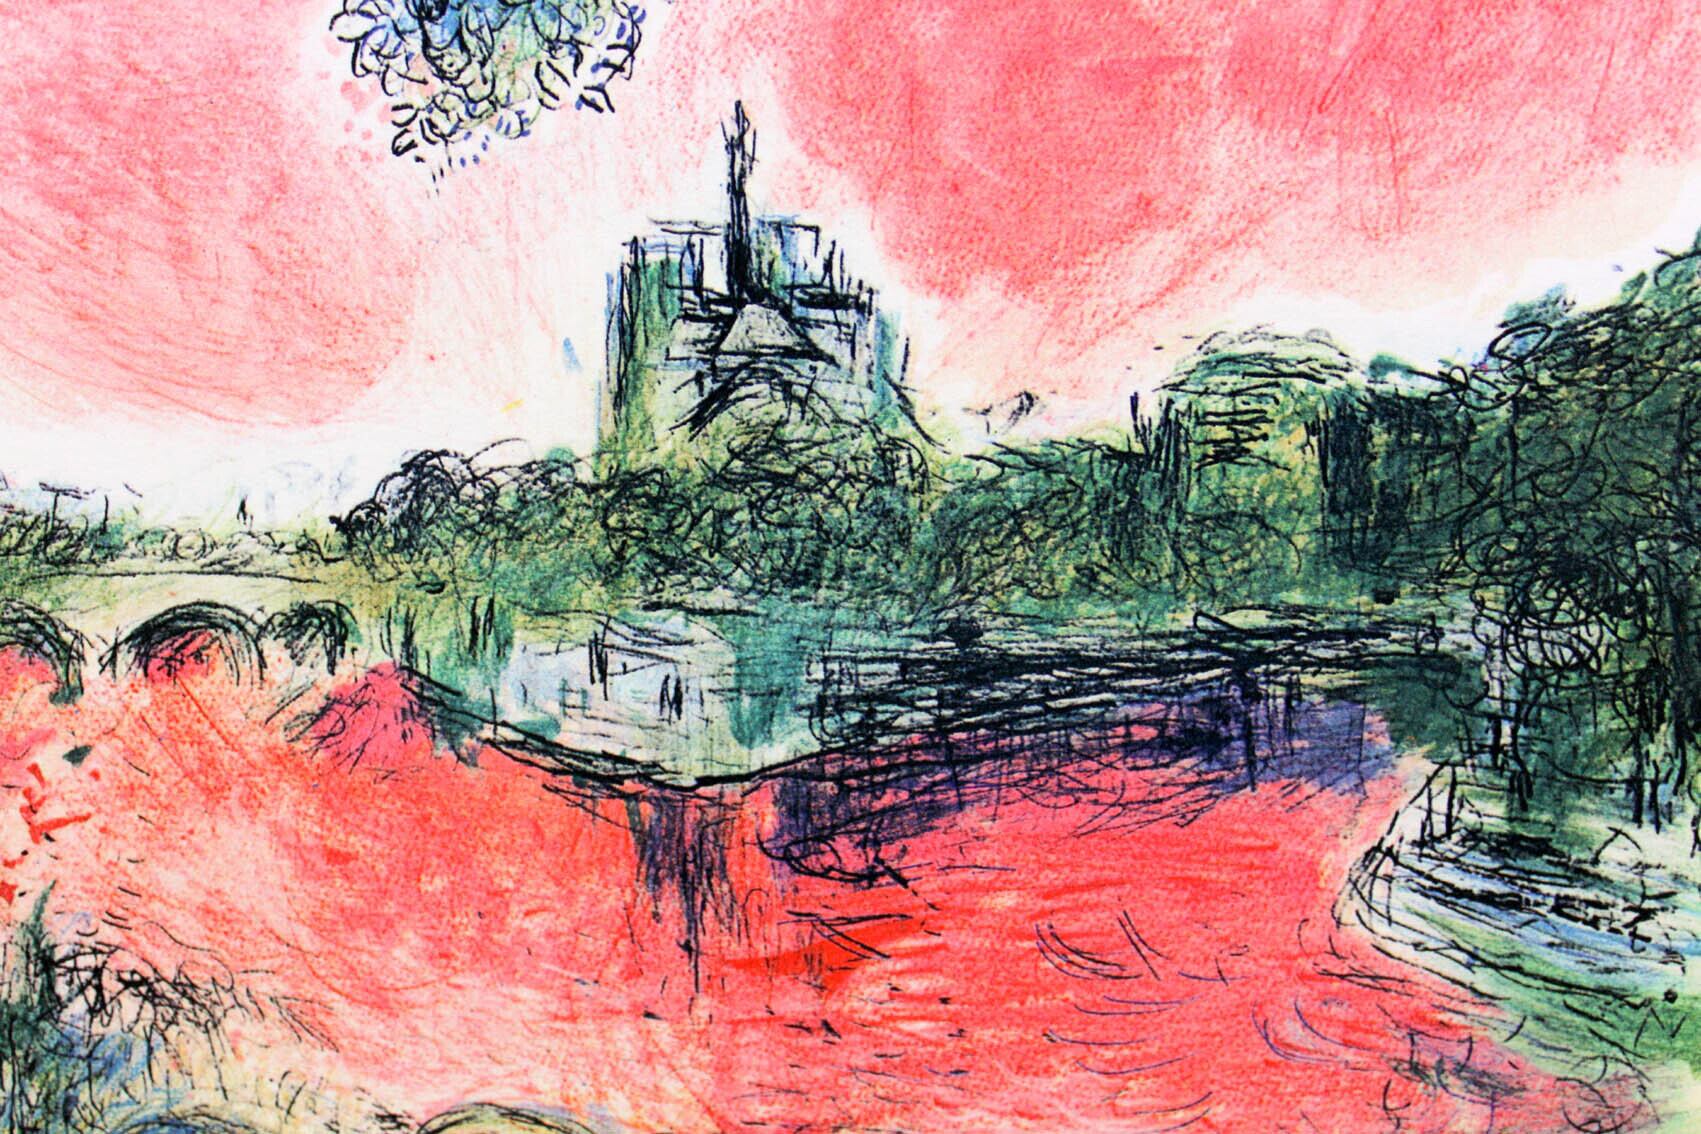 マルク・シャガール絵画「ノートルダムの眺め」作品証明書・展示用フック・限定375部エディション付複製画ジークレ